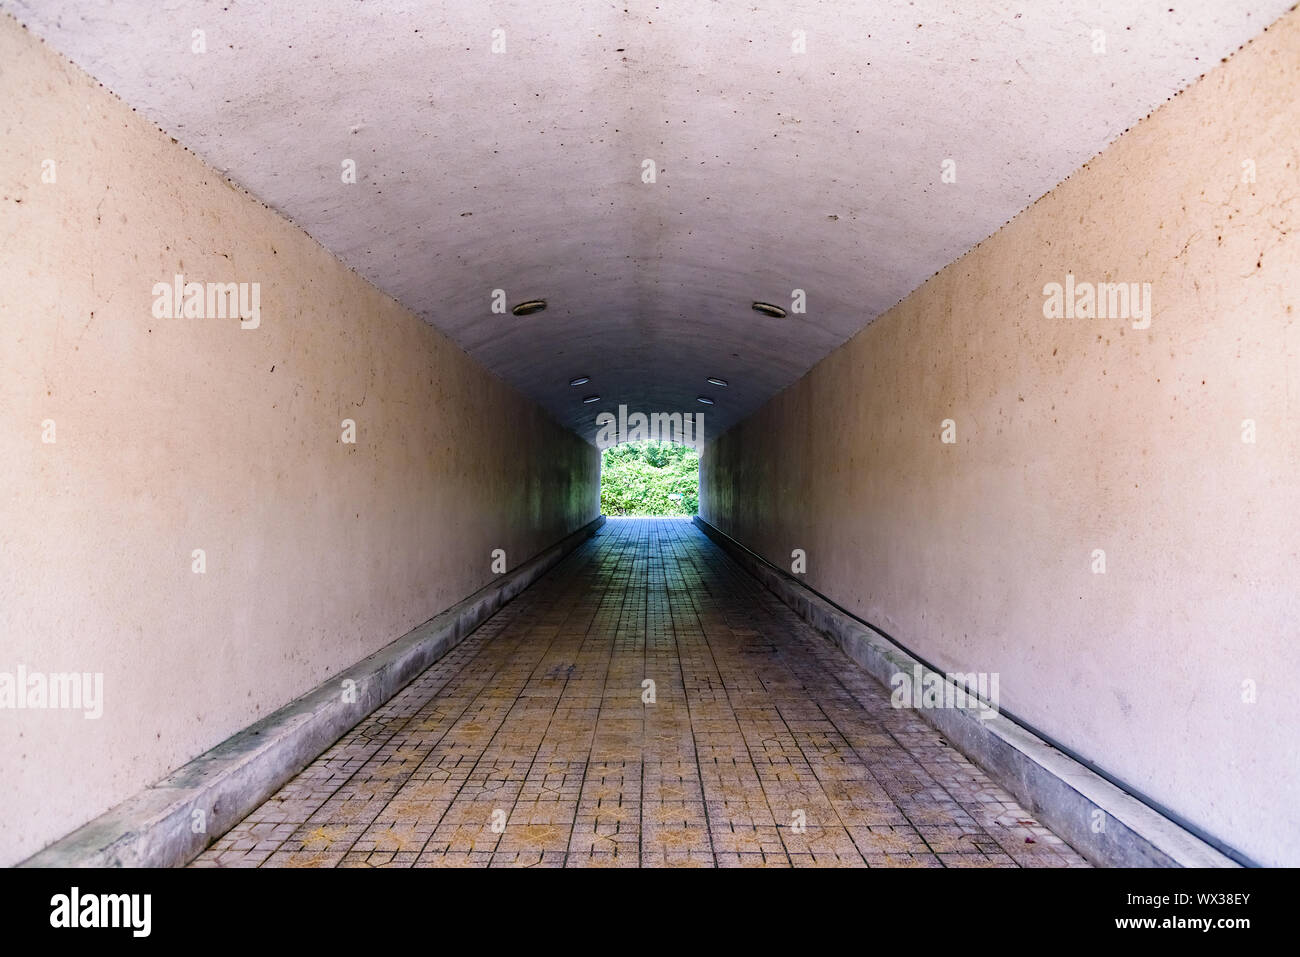 underground pedestrian tunnel Stock Photo